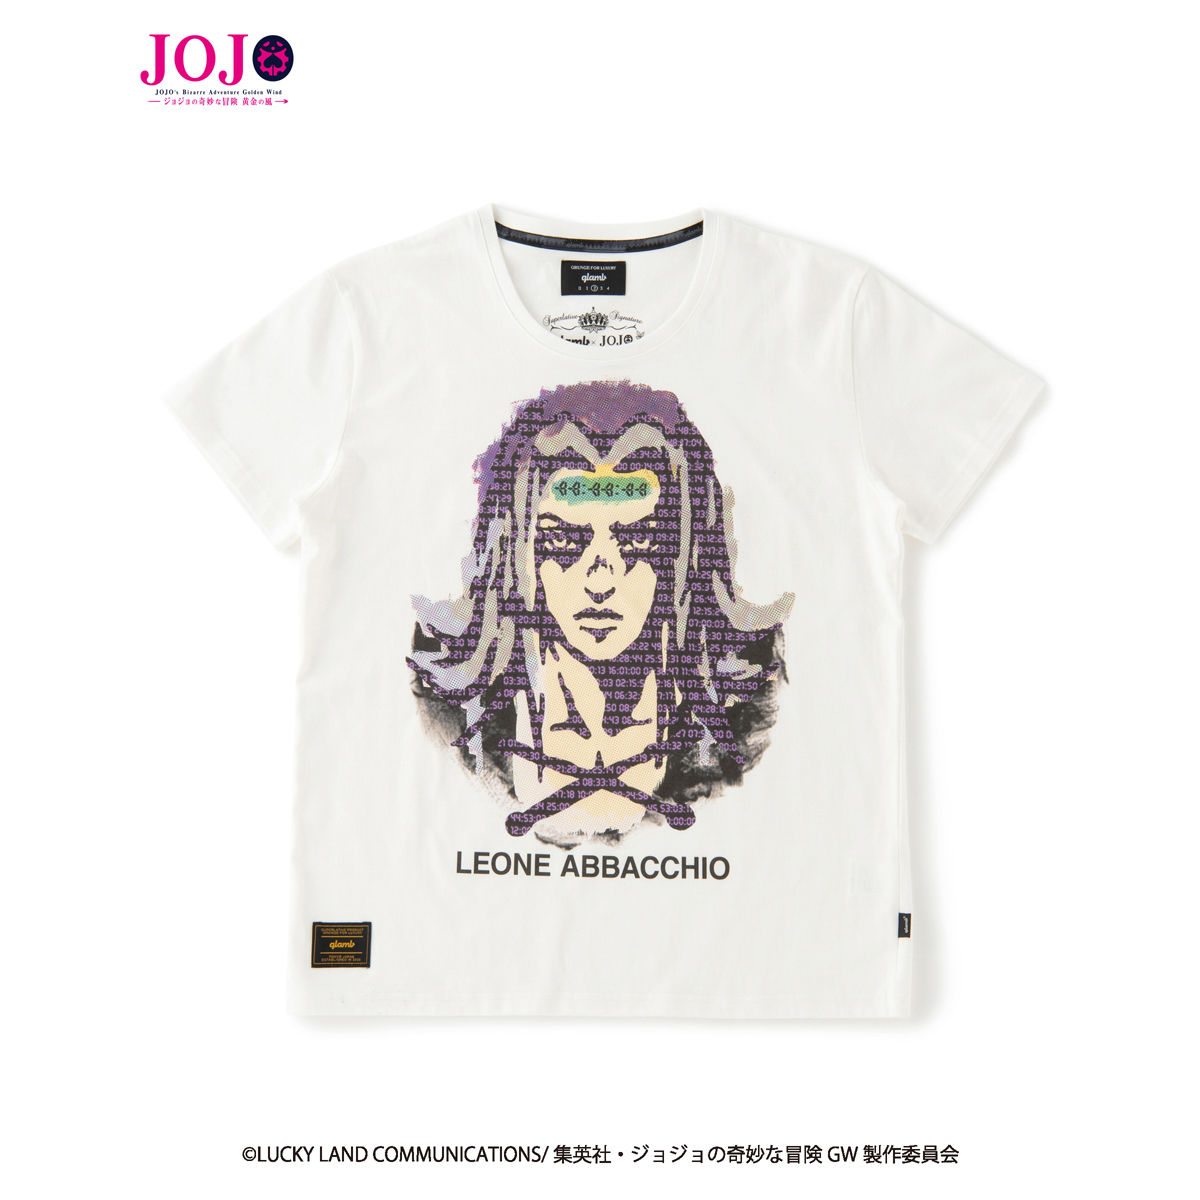 ジョジョの奇妙な冒険 黄金の風』×『glamb』コラボレーションTシャツ 